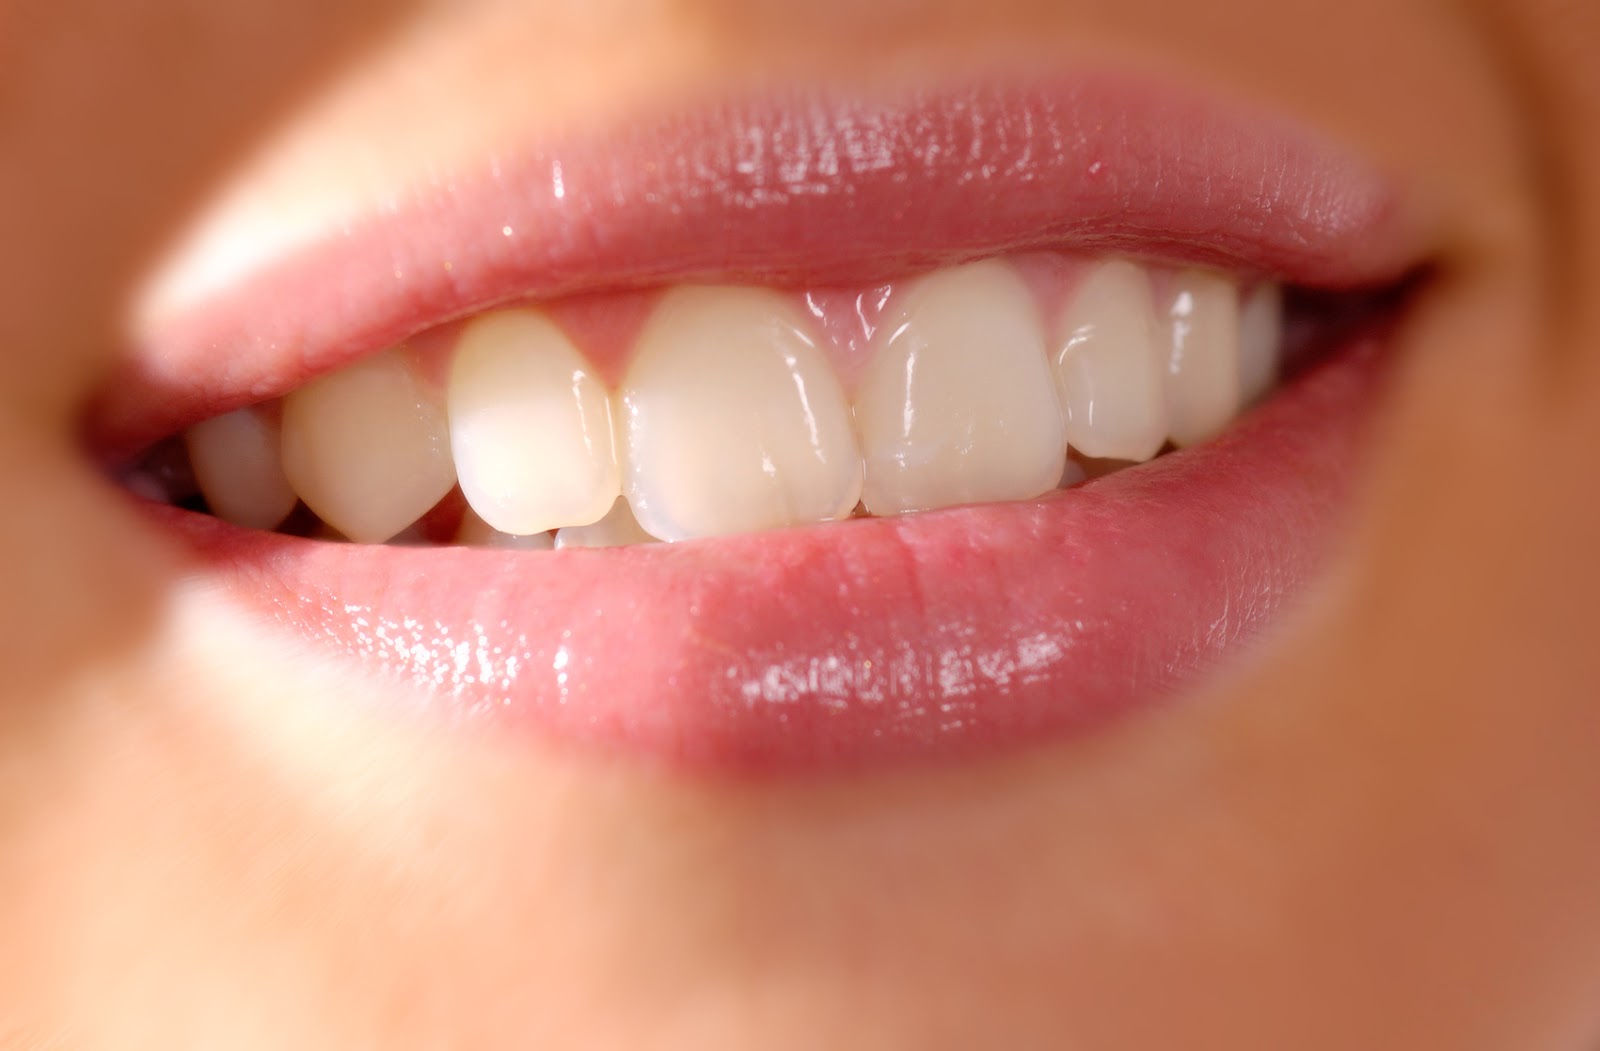 Видеть во сне вставные зубы. К чему снится вставные зубы? К чему снятся зубы